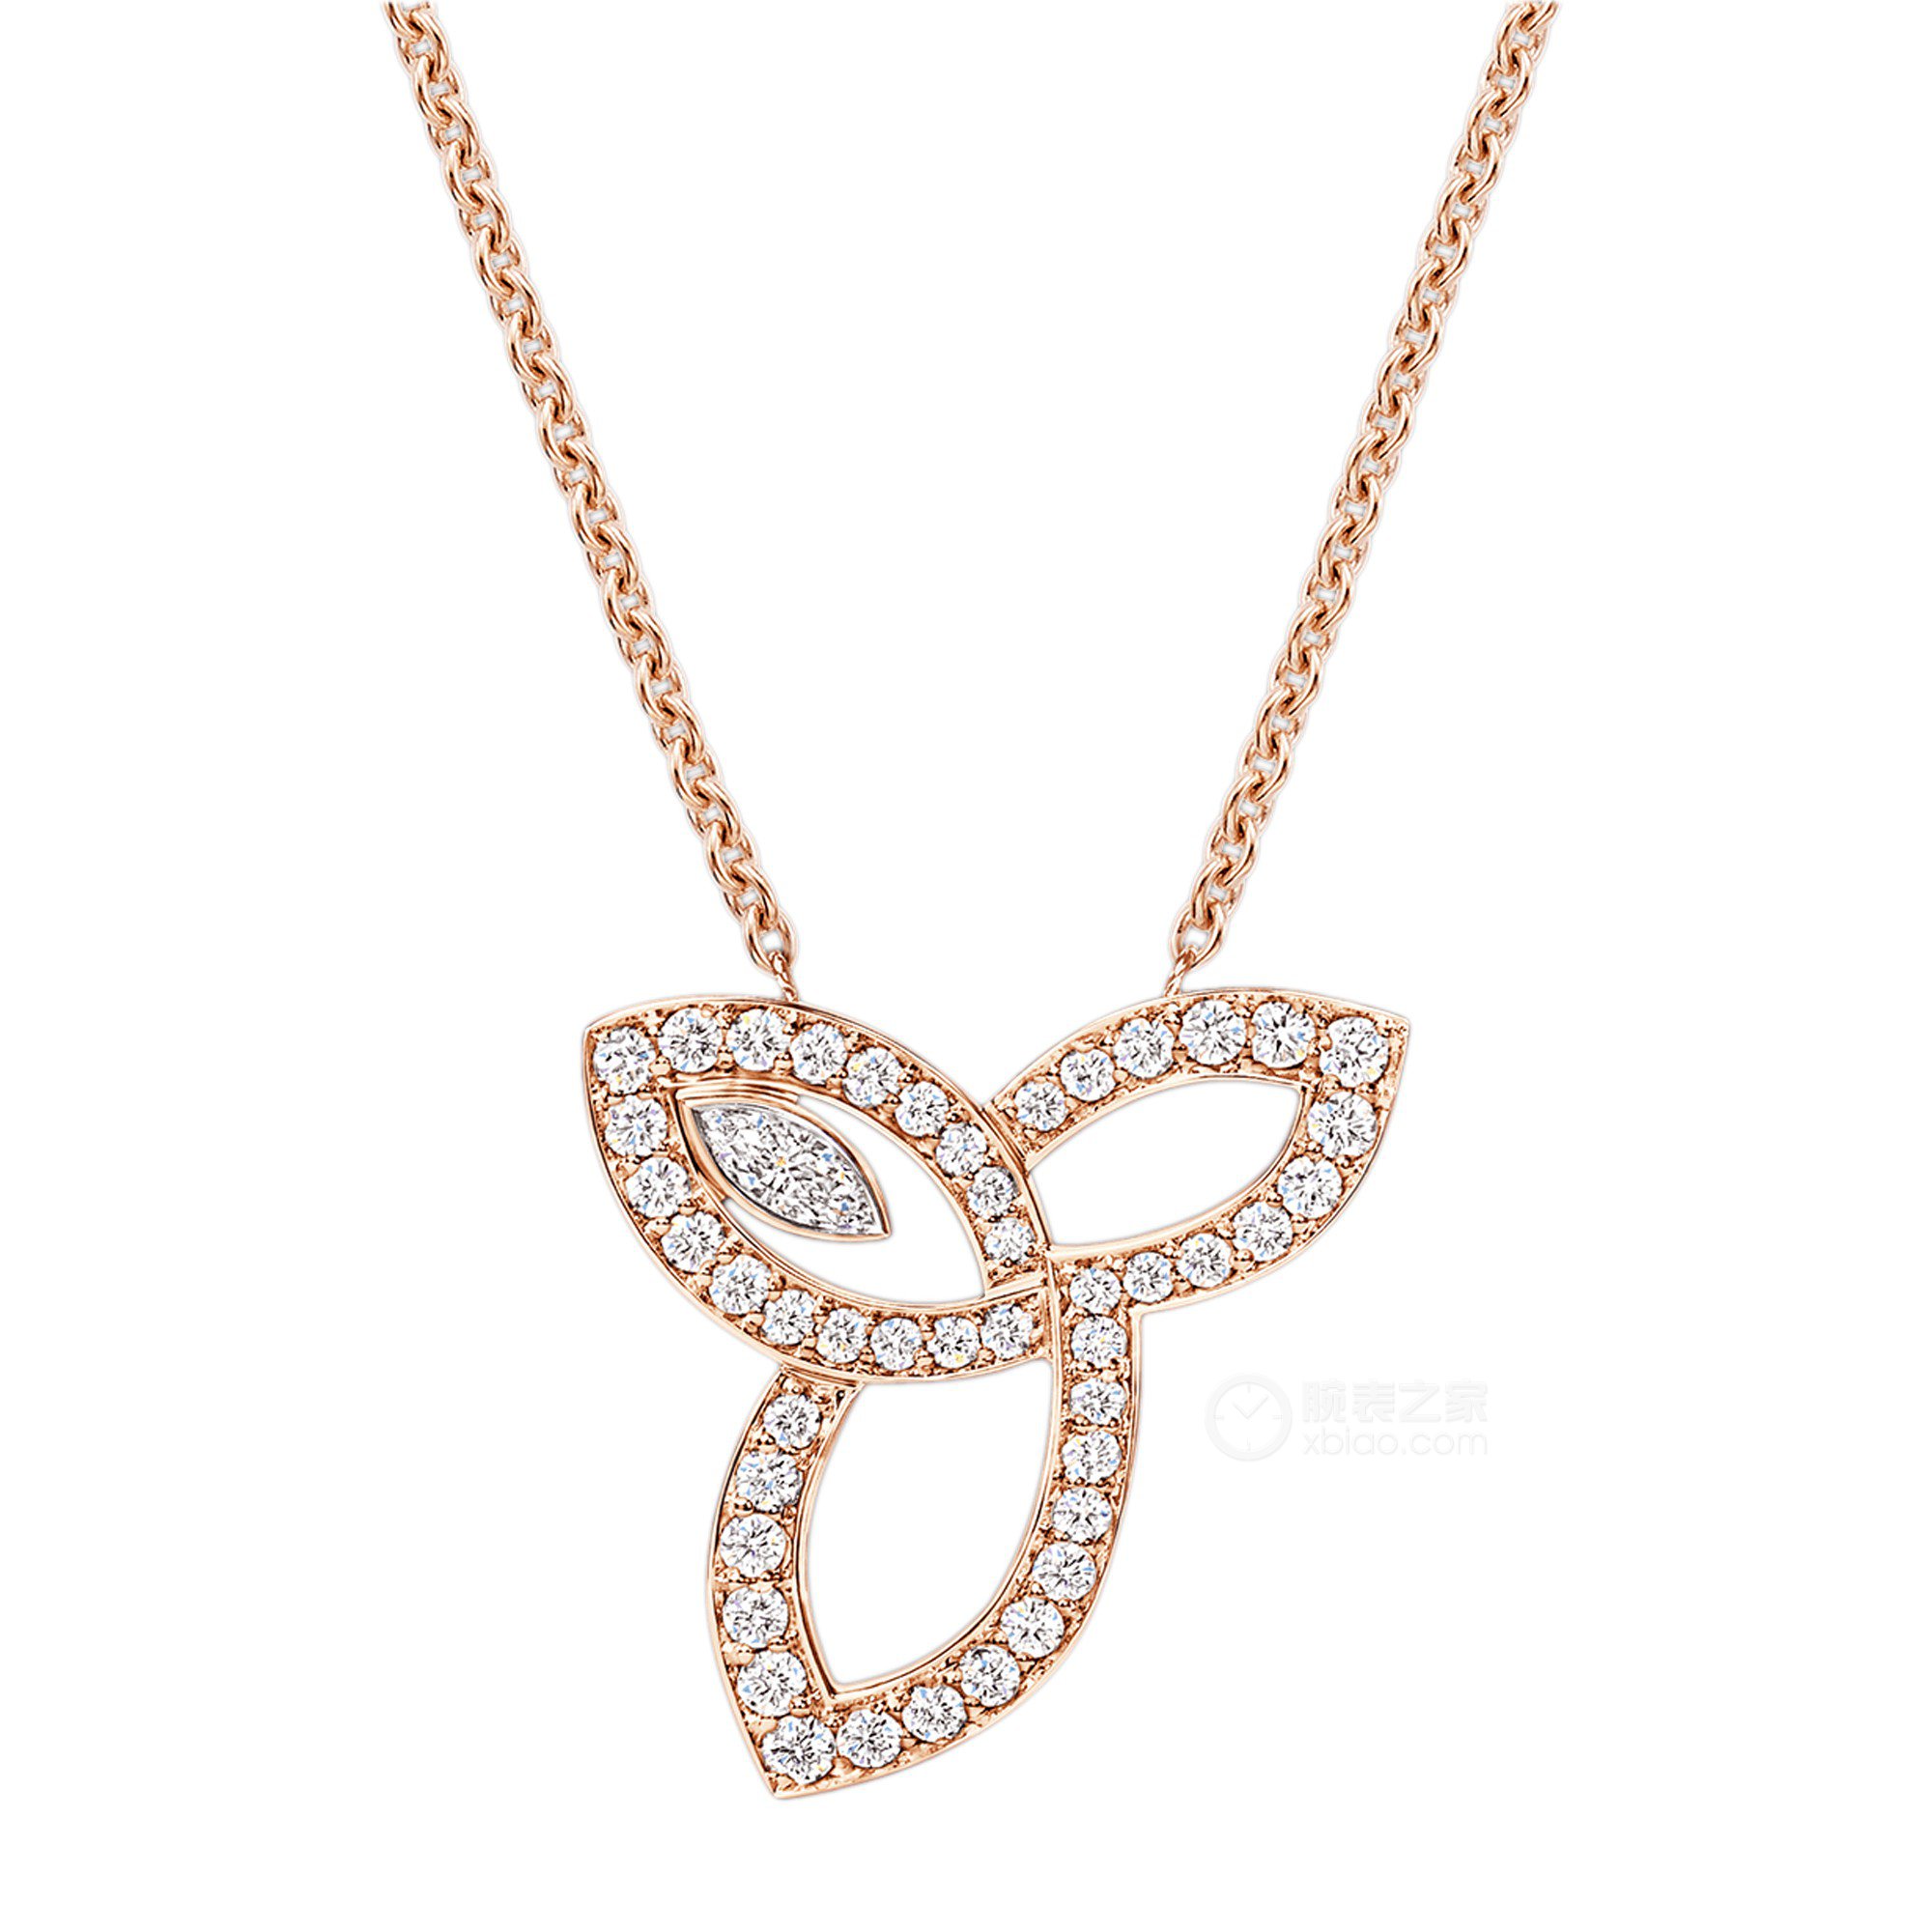 海瑞温斯顿lilycluster珠宝系列pedrmqrflc项链11